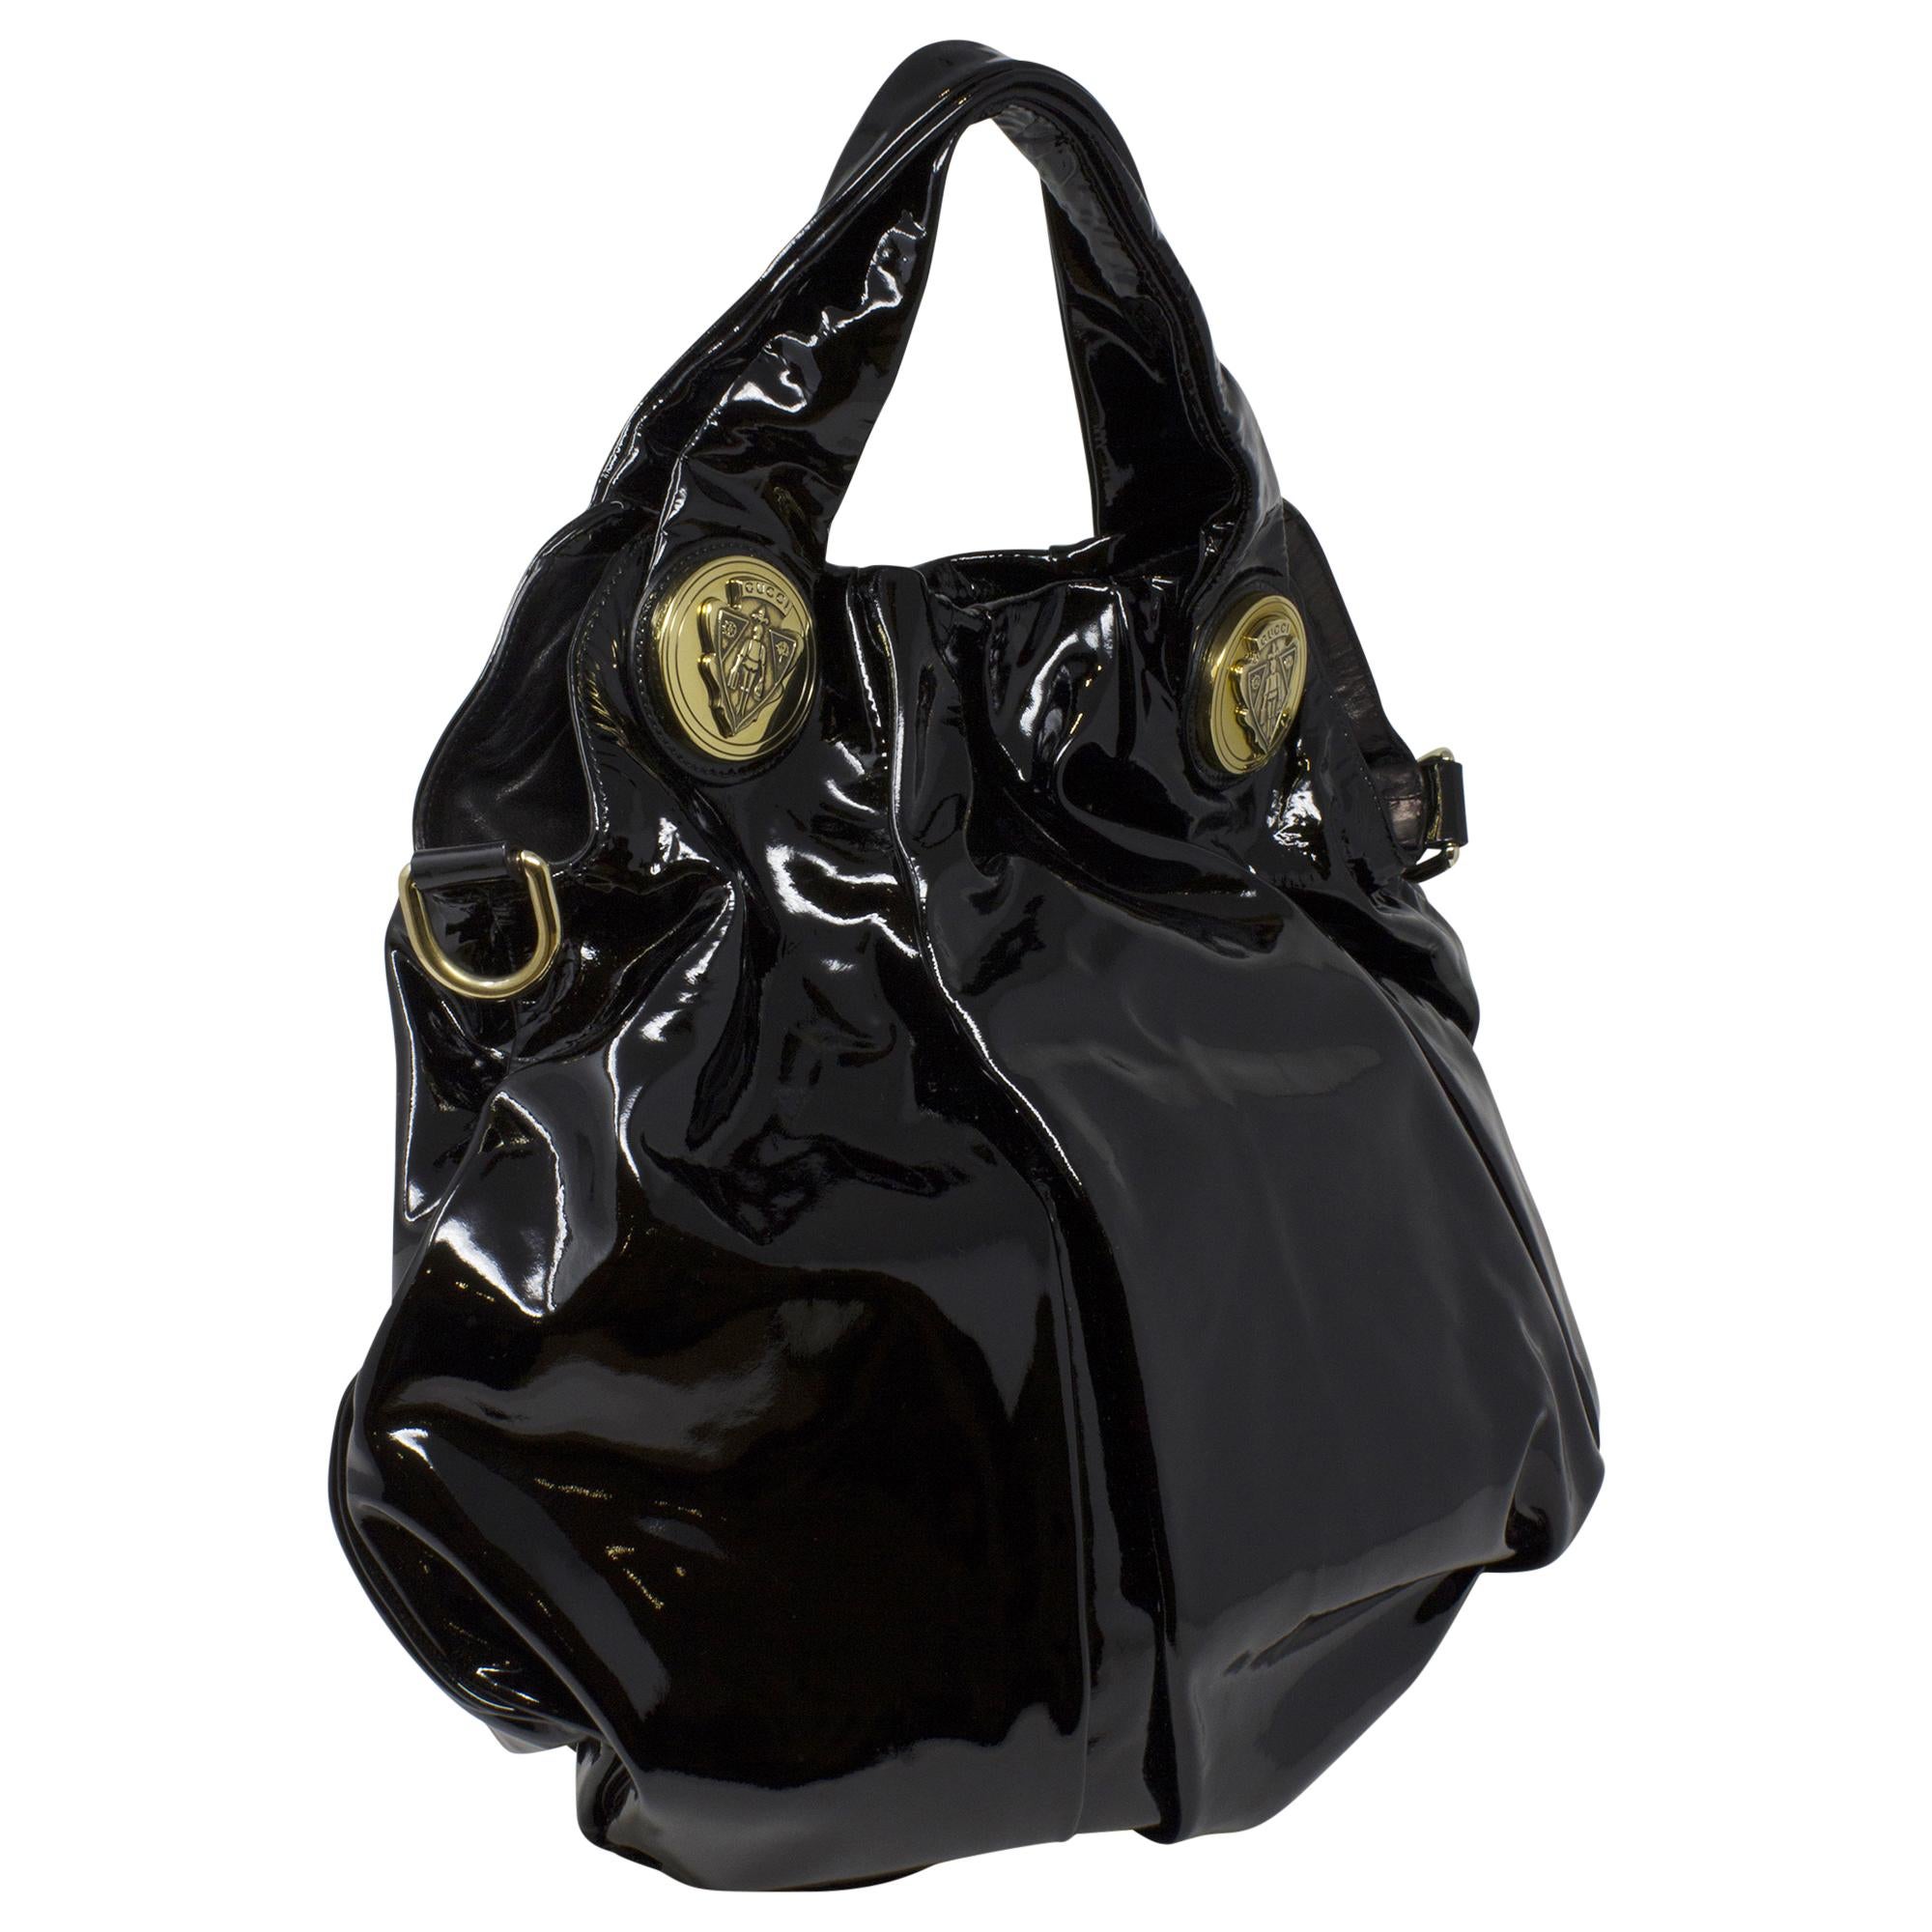 Die Gucci Black Patent Tote ist ein elegantes und anspruchsvolles Accessoire für die moderne Fashionista. Diese Tasche aus luxuriösem schwarzem Lackleder strahlt Eleganz und Stil aus. Mit ihrem minimalistischen Design und den silbernen